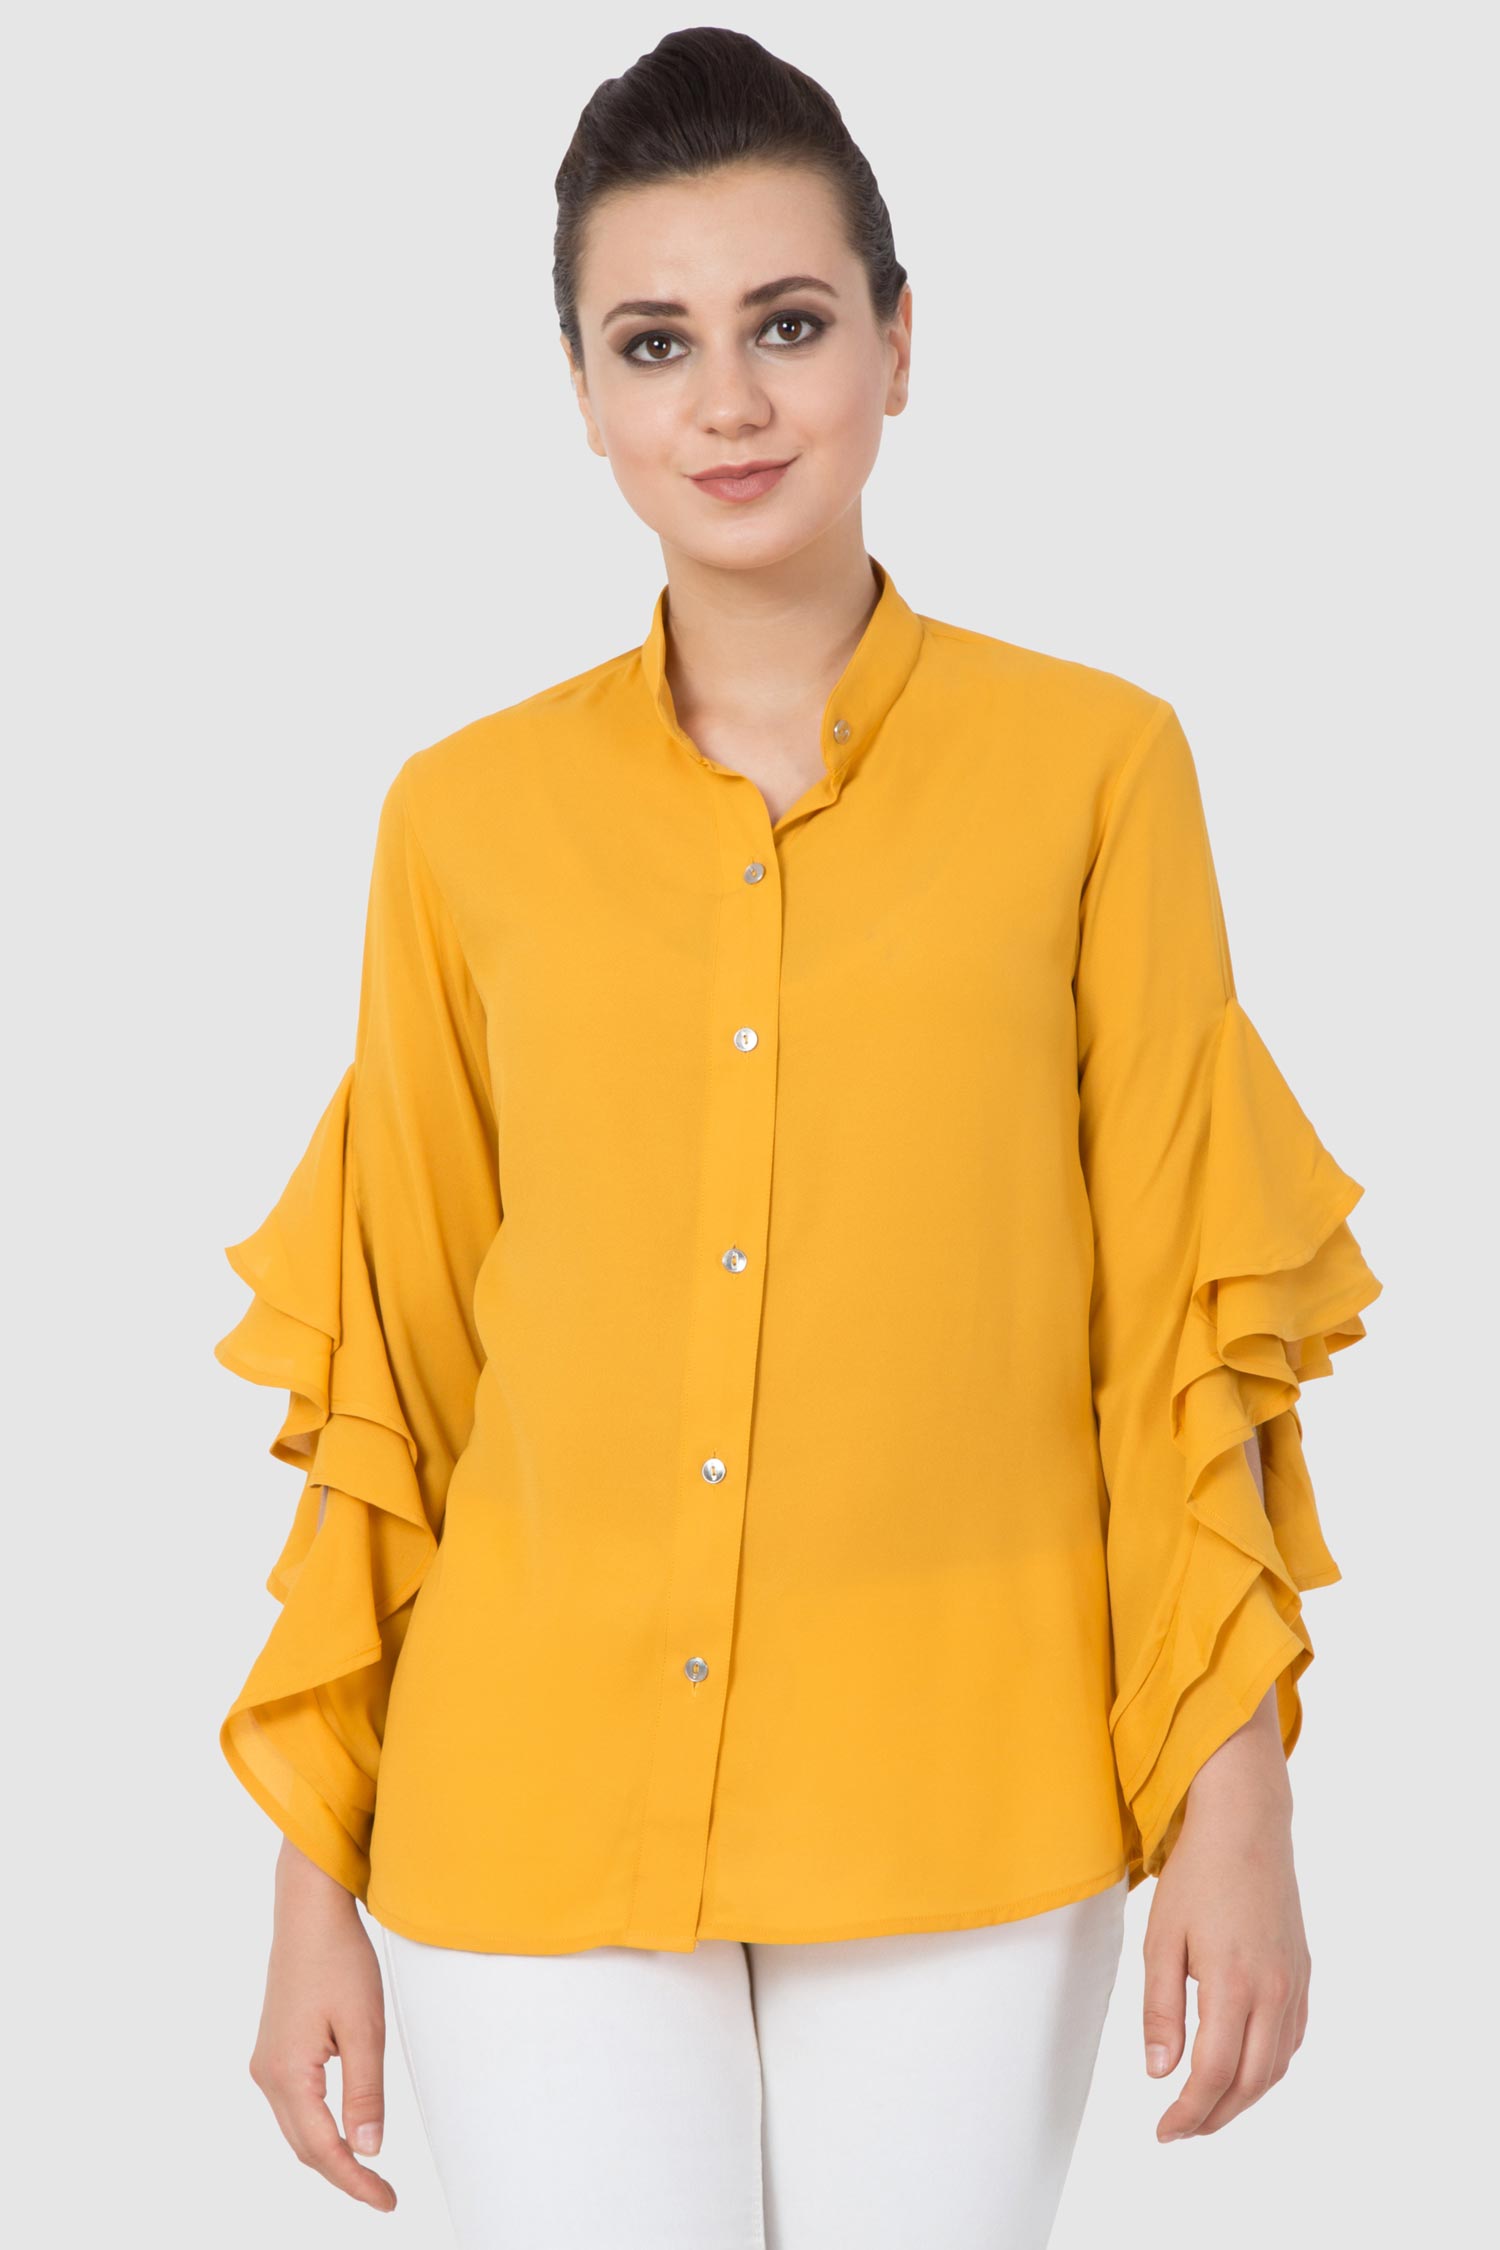 Yellow Ruffle Formal Shirt